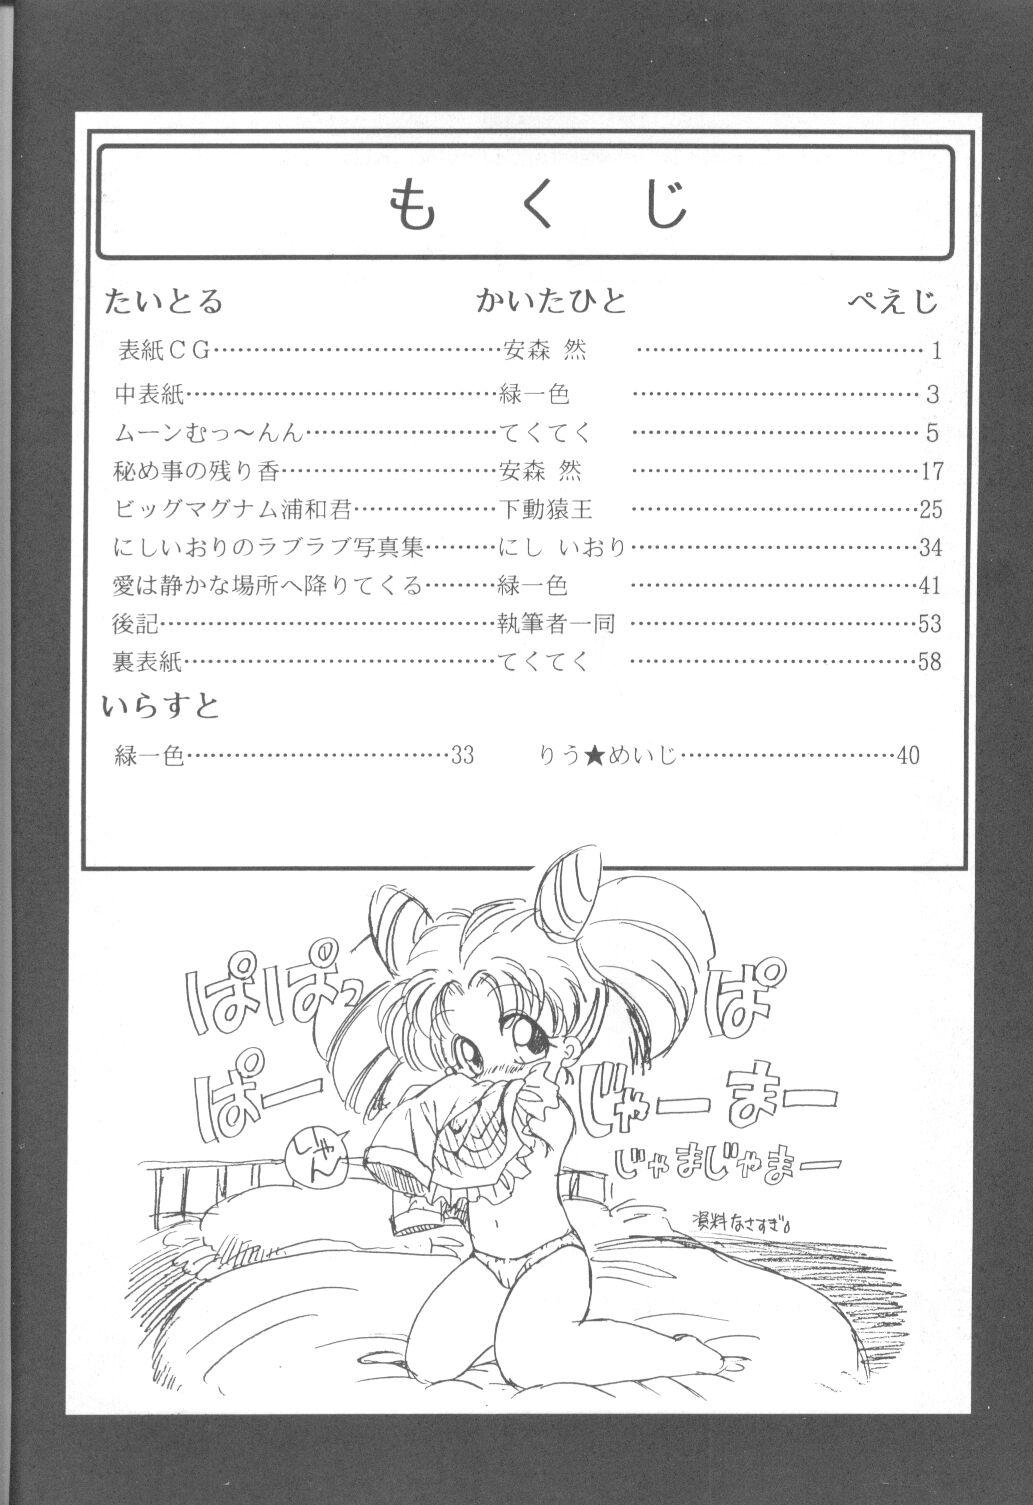 Tanned Tabeta Kigasuru 9 - Sailor moon Older - Page 3